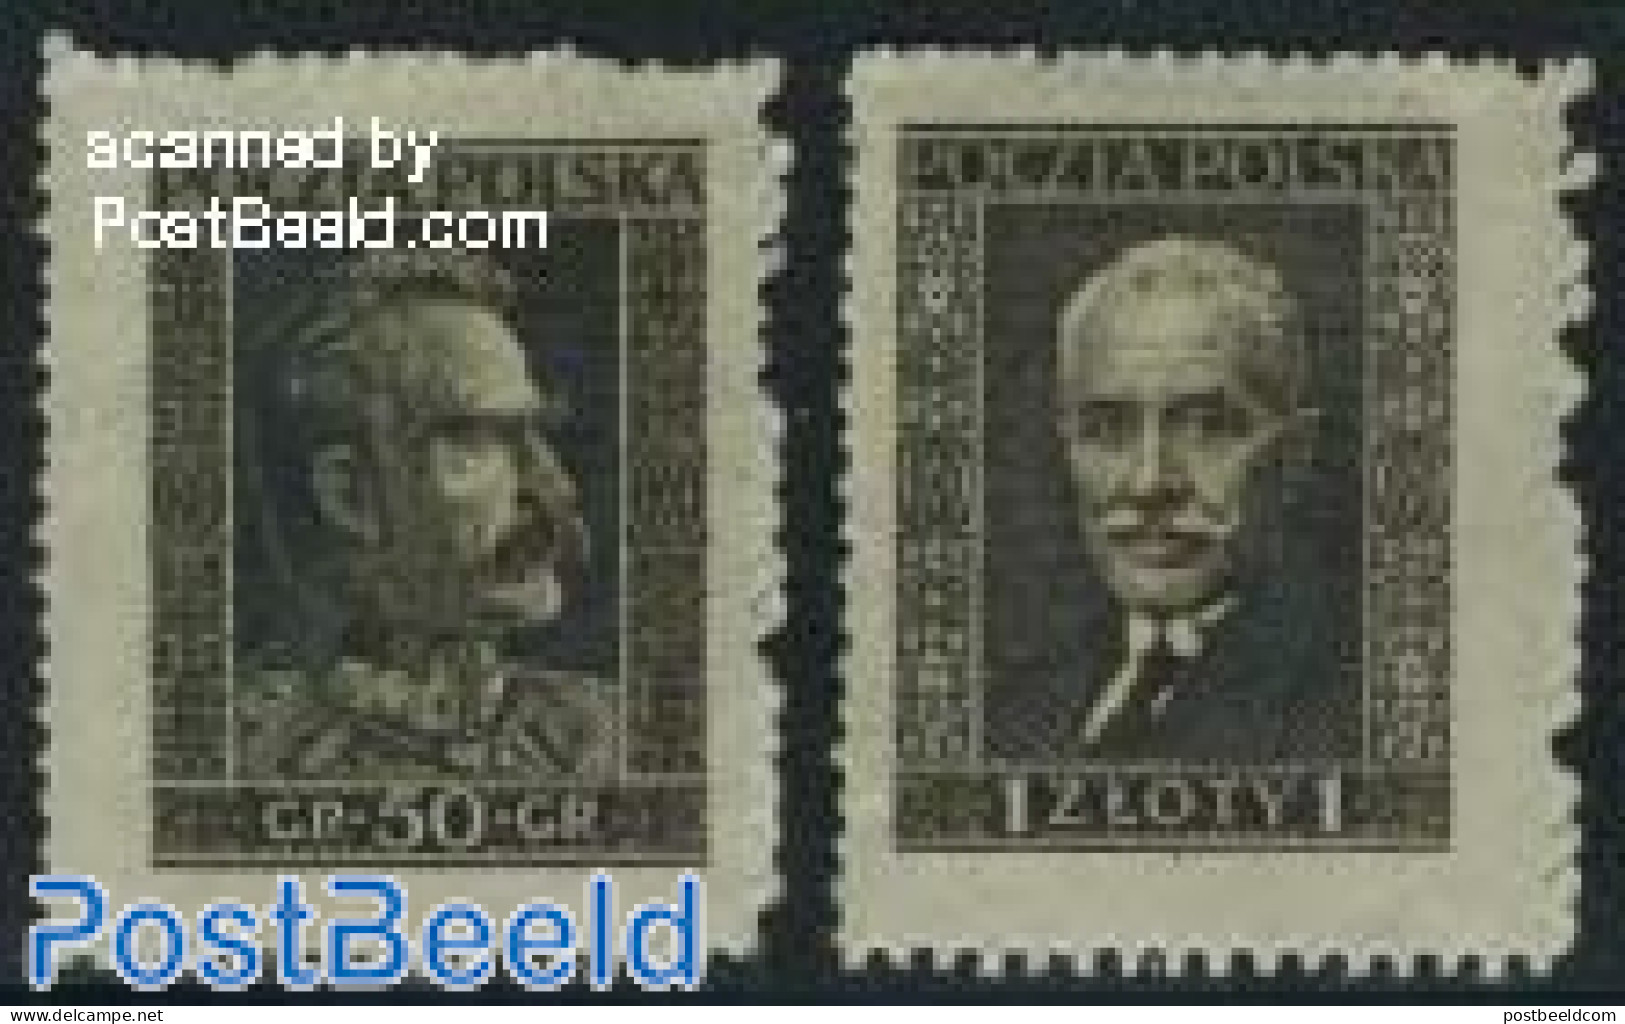 Poland 1928 Warzawa Stamp Exposition 2v, Unused (hinged), Philately - Neufs